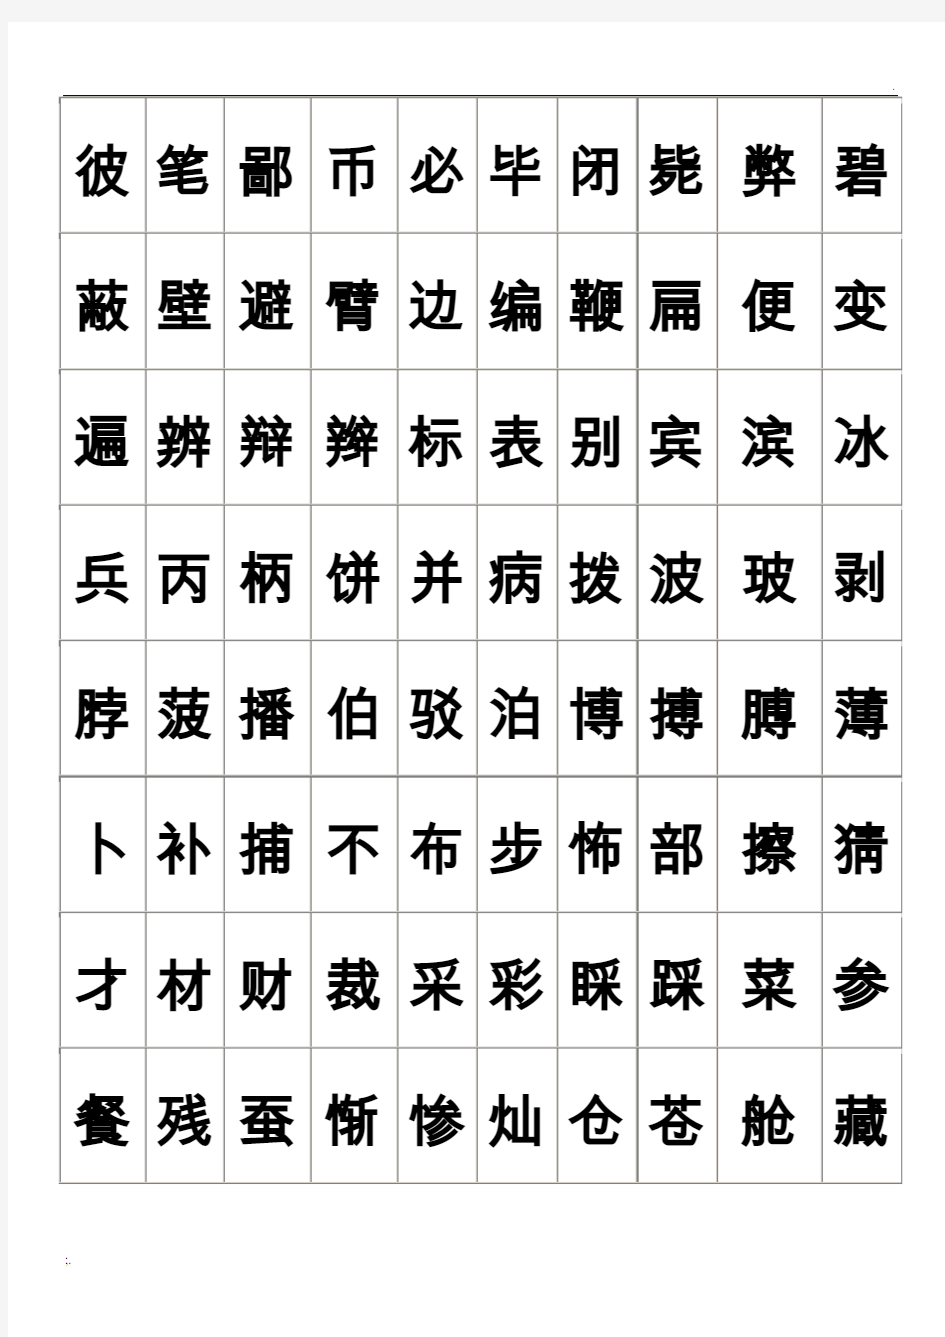 练字-2500个常用汉字大全-好看的字体